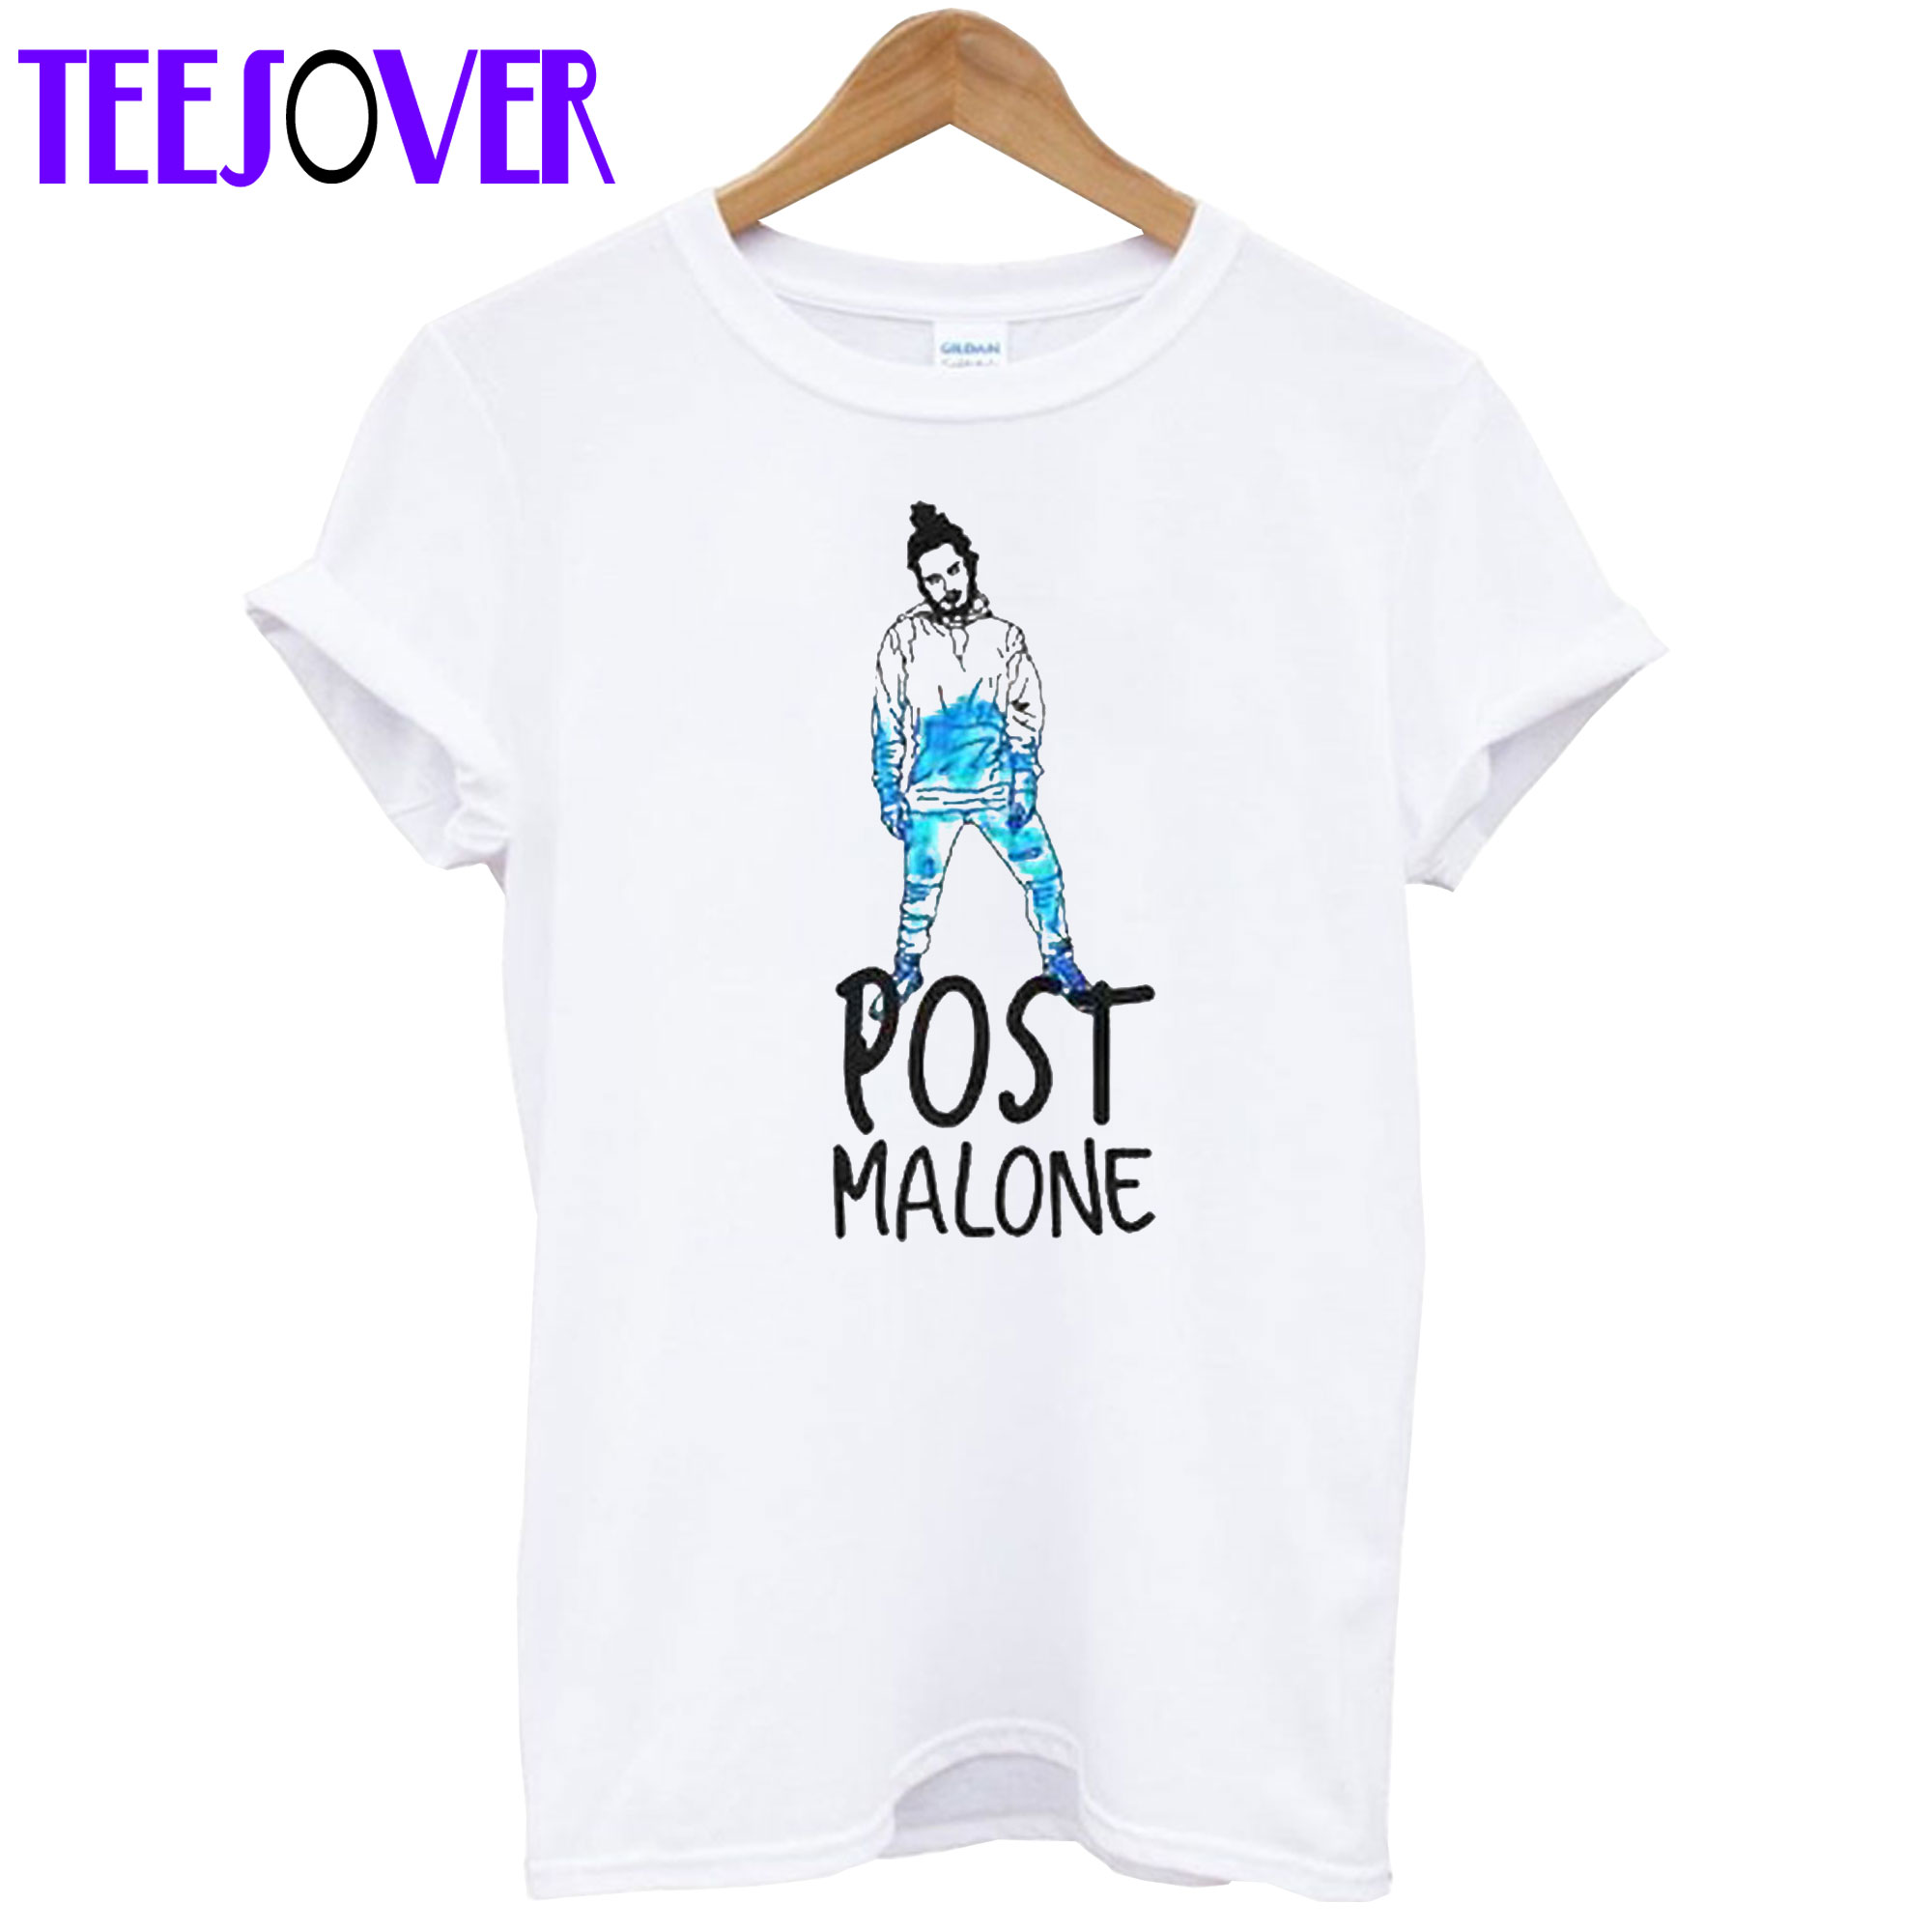 Post Malone T-Shirt